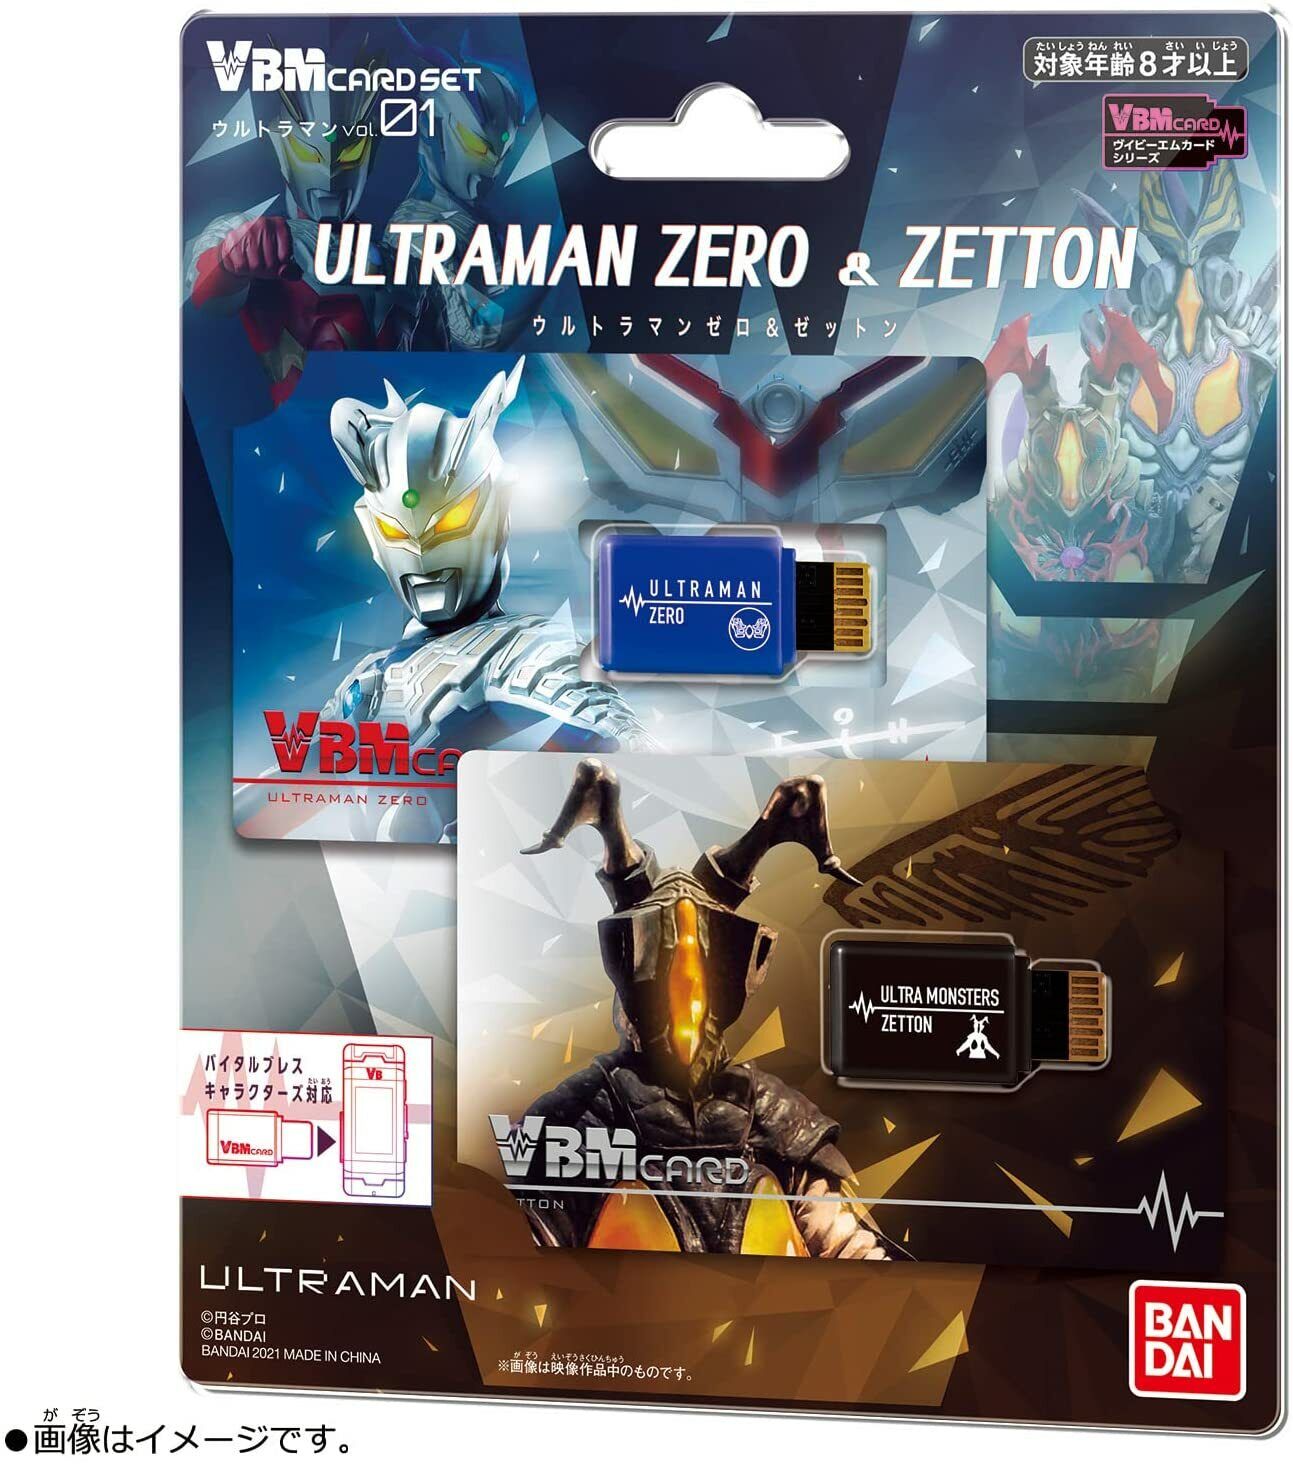 New Bandai Vbm Card Set Ultraman Vol.1 Ultraman Zero & Zetton From Japan